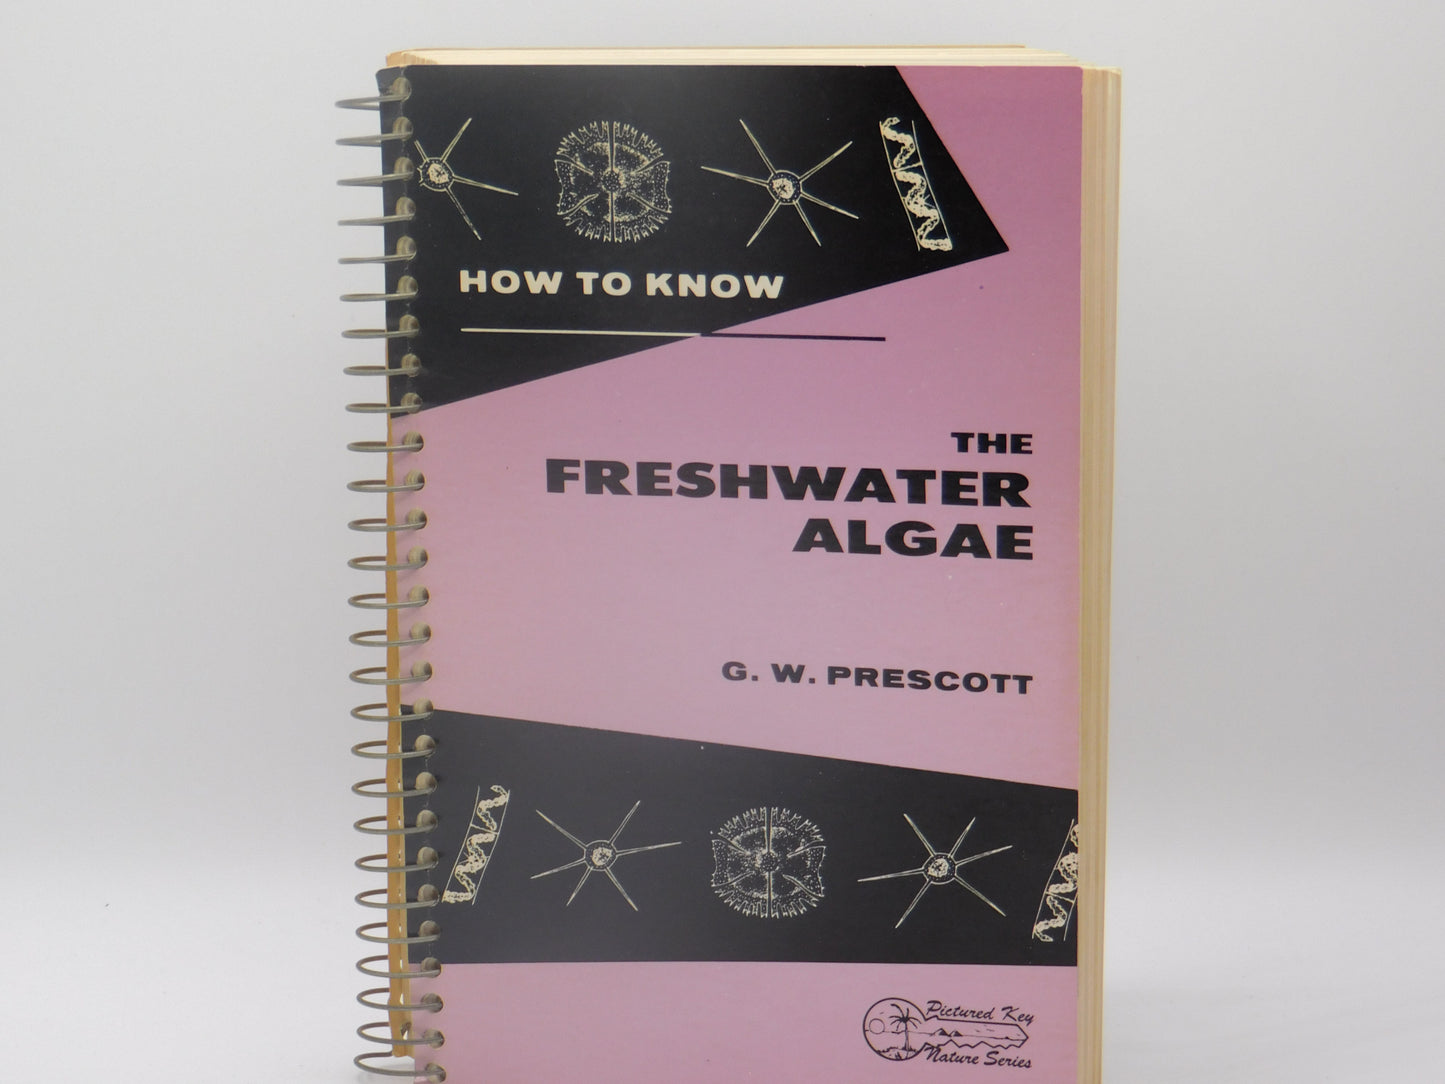 The Freshwater Algae by G.W. Prescott